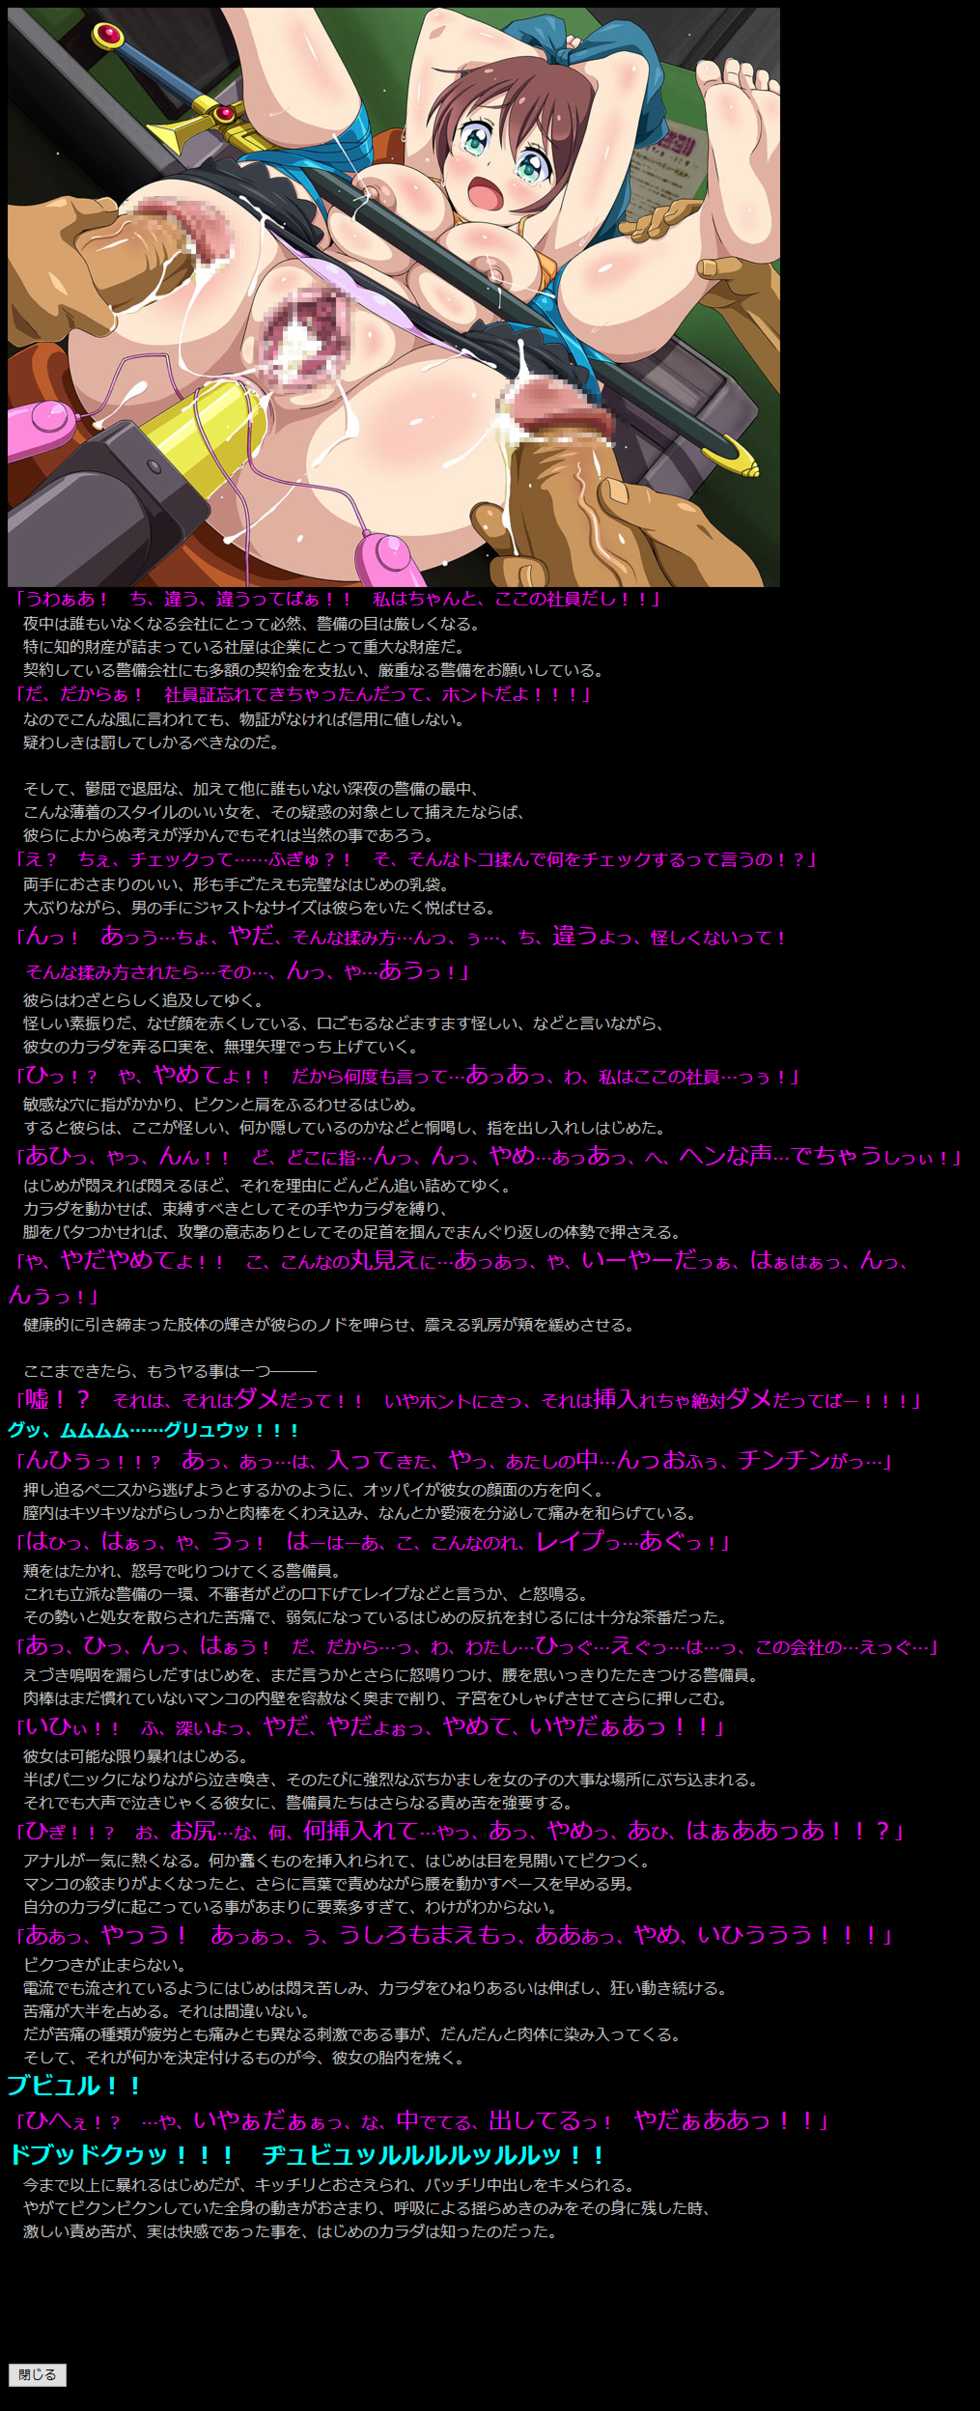 [LolitaChannel (Arigase Shinji)] Yuumei Chara Kannou Shousetsu CG Shuu No.359!! NEW GAME HaaHaa CG Shuu (NEW GAME!) - Page 5